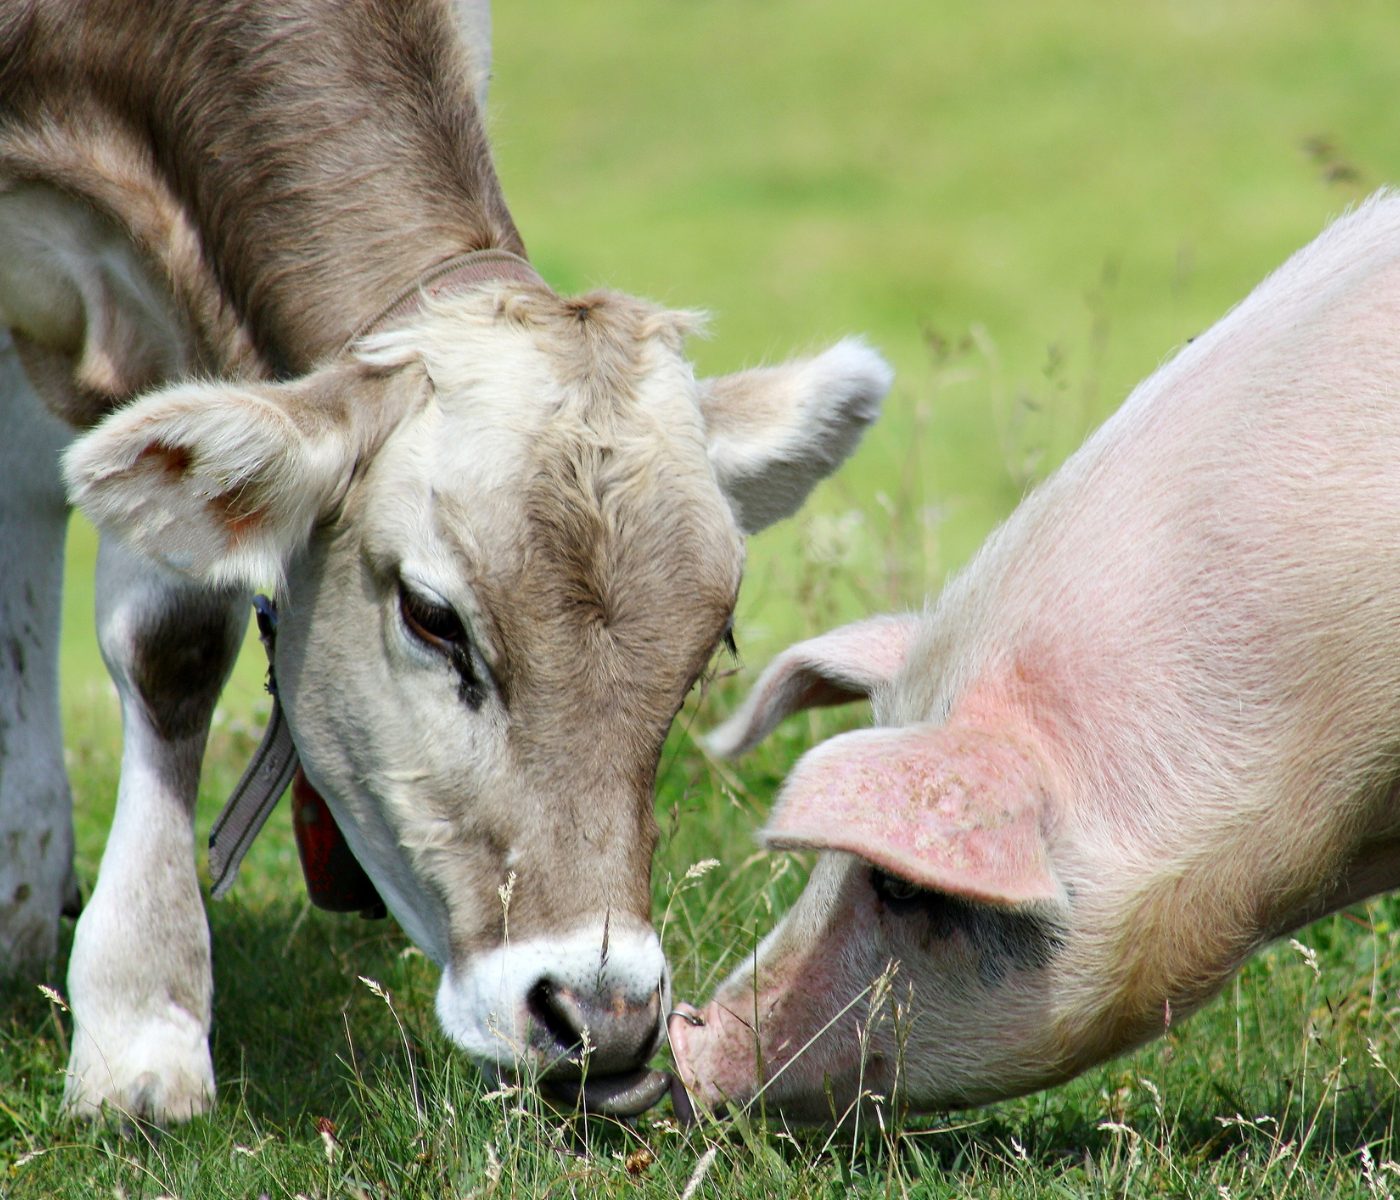 Promotores de crescimento na nutrição animal: regulamentação e implicações